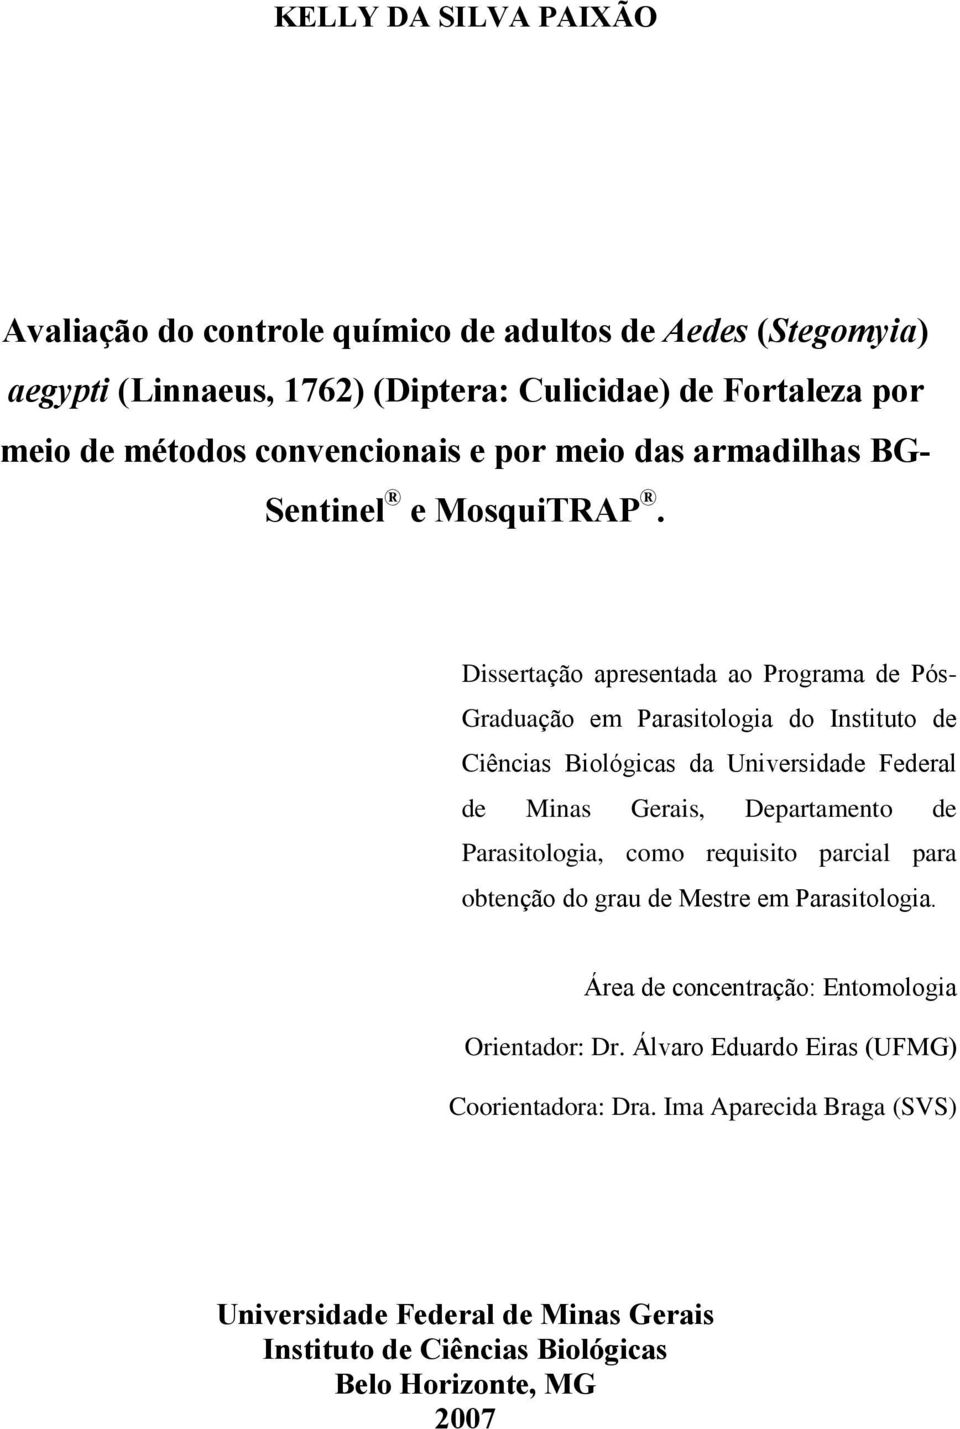 Dissertação apresentada ao Programa de Pós- Graduação em Parasitologia do Instituto de Ciências Biológicas da Universidade Federal de Minas Gerais, Departamento de